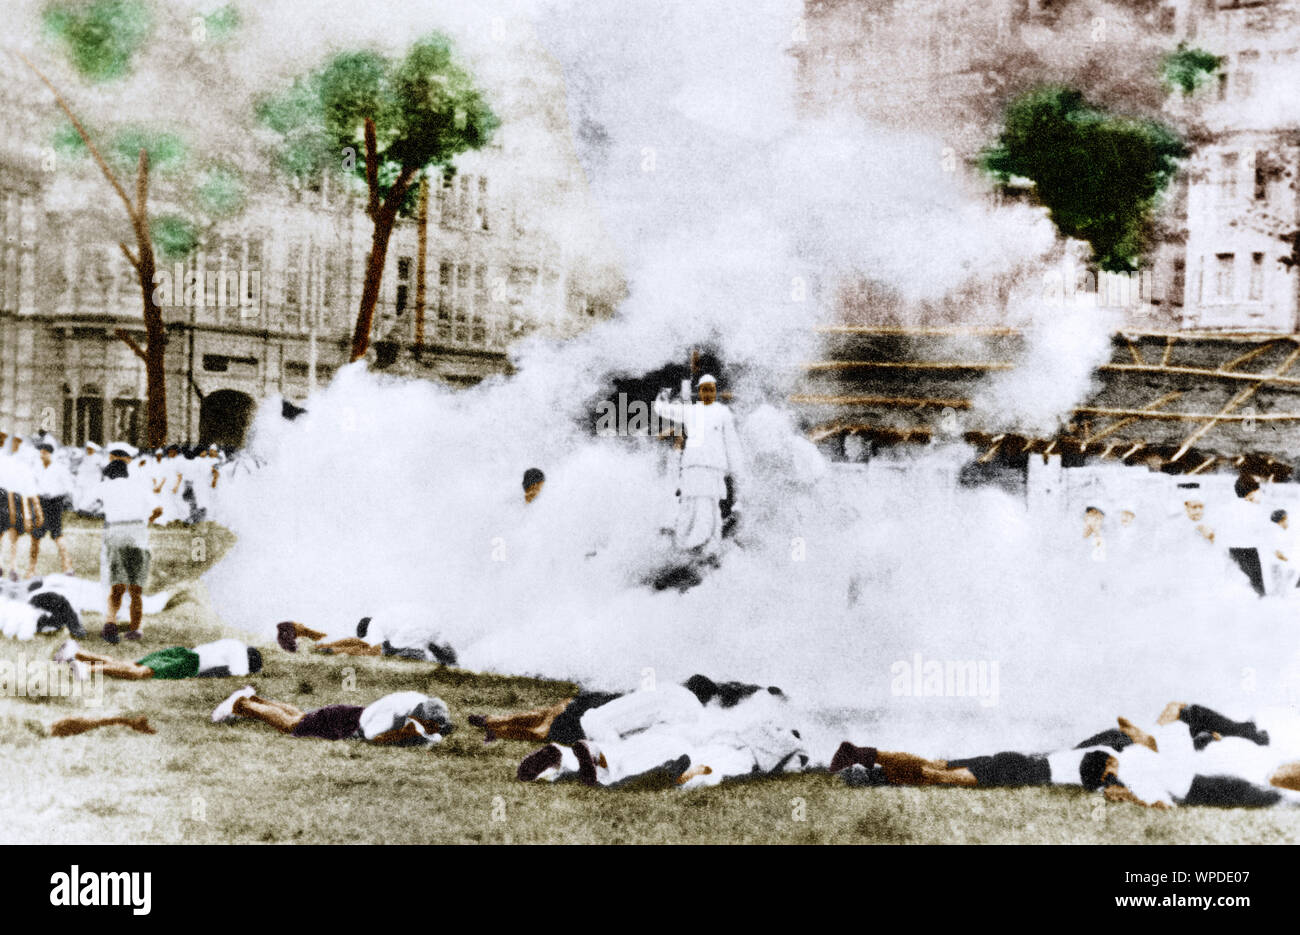 Gas lacrimógeno en el tanque de Gowalia Maidan, movimiento Quit India, lucha por la libertad, Bombay, Mumbai, India, Asia, 9 de agosto de 1942, imagen de la antigua cosecha de 1900s Foto de stock